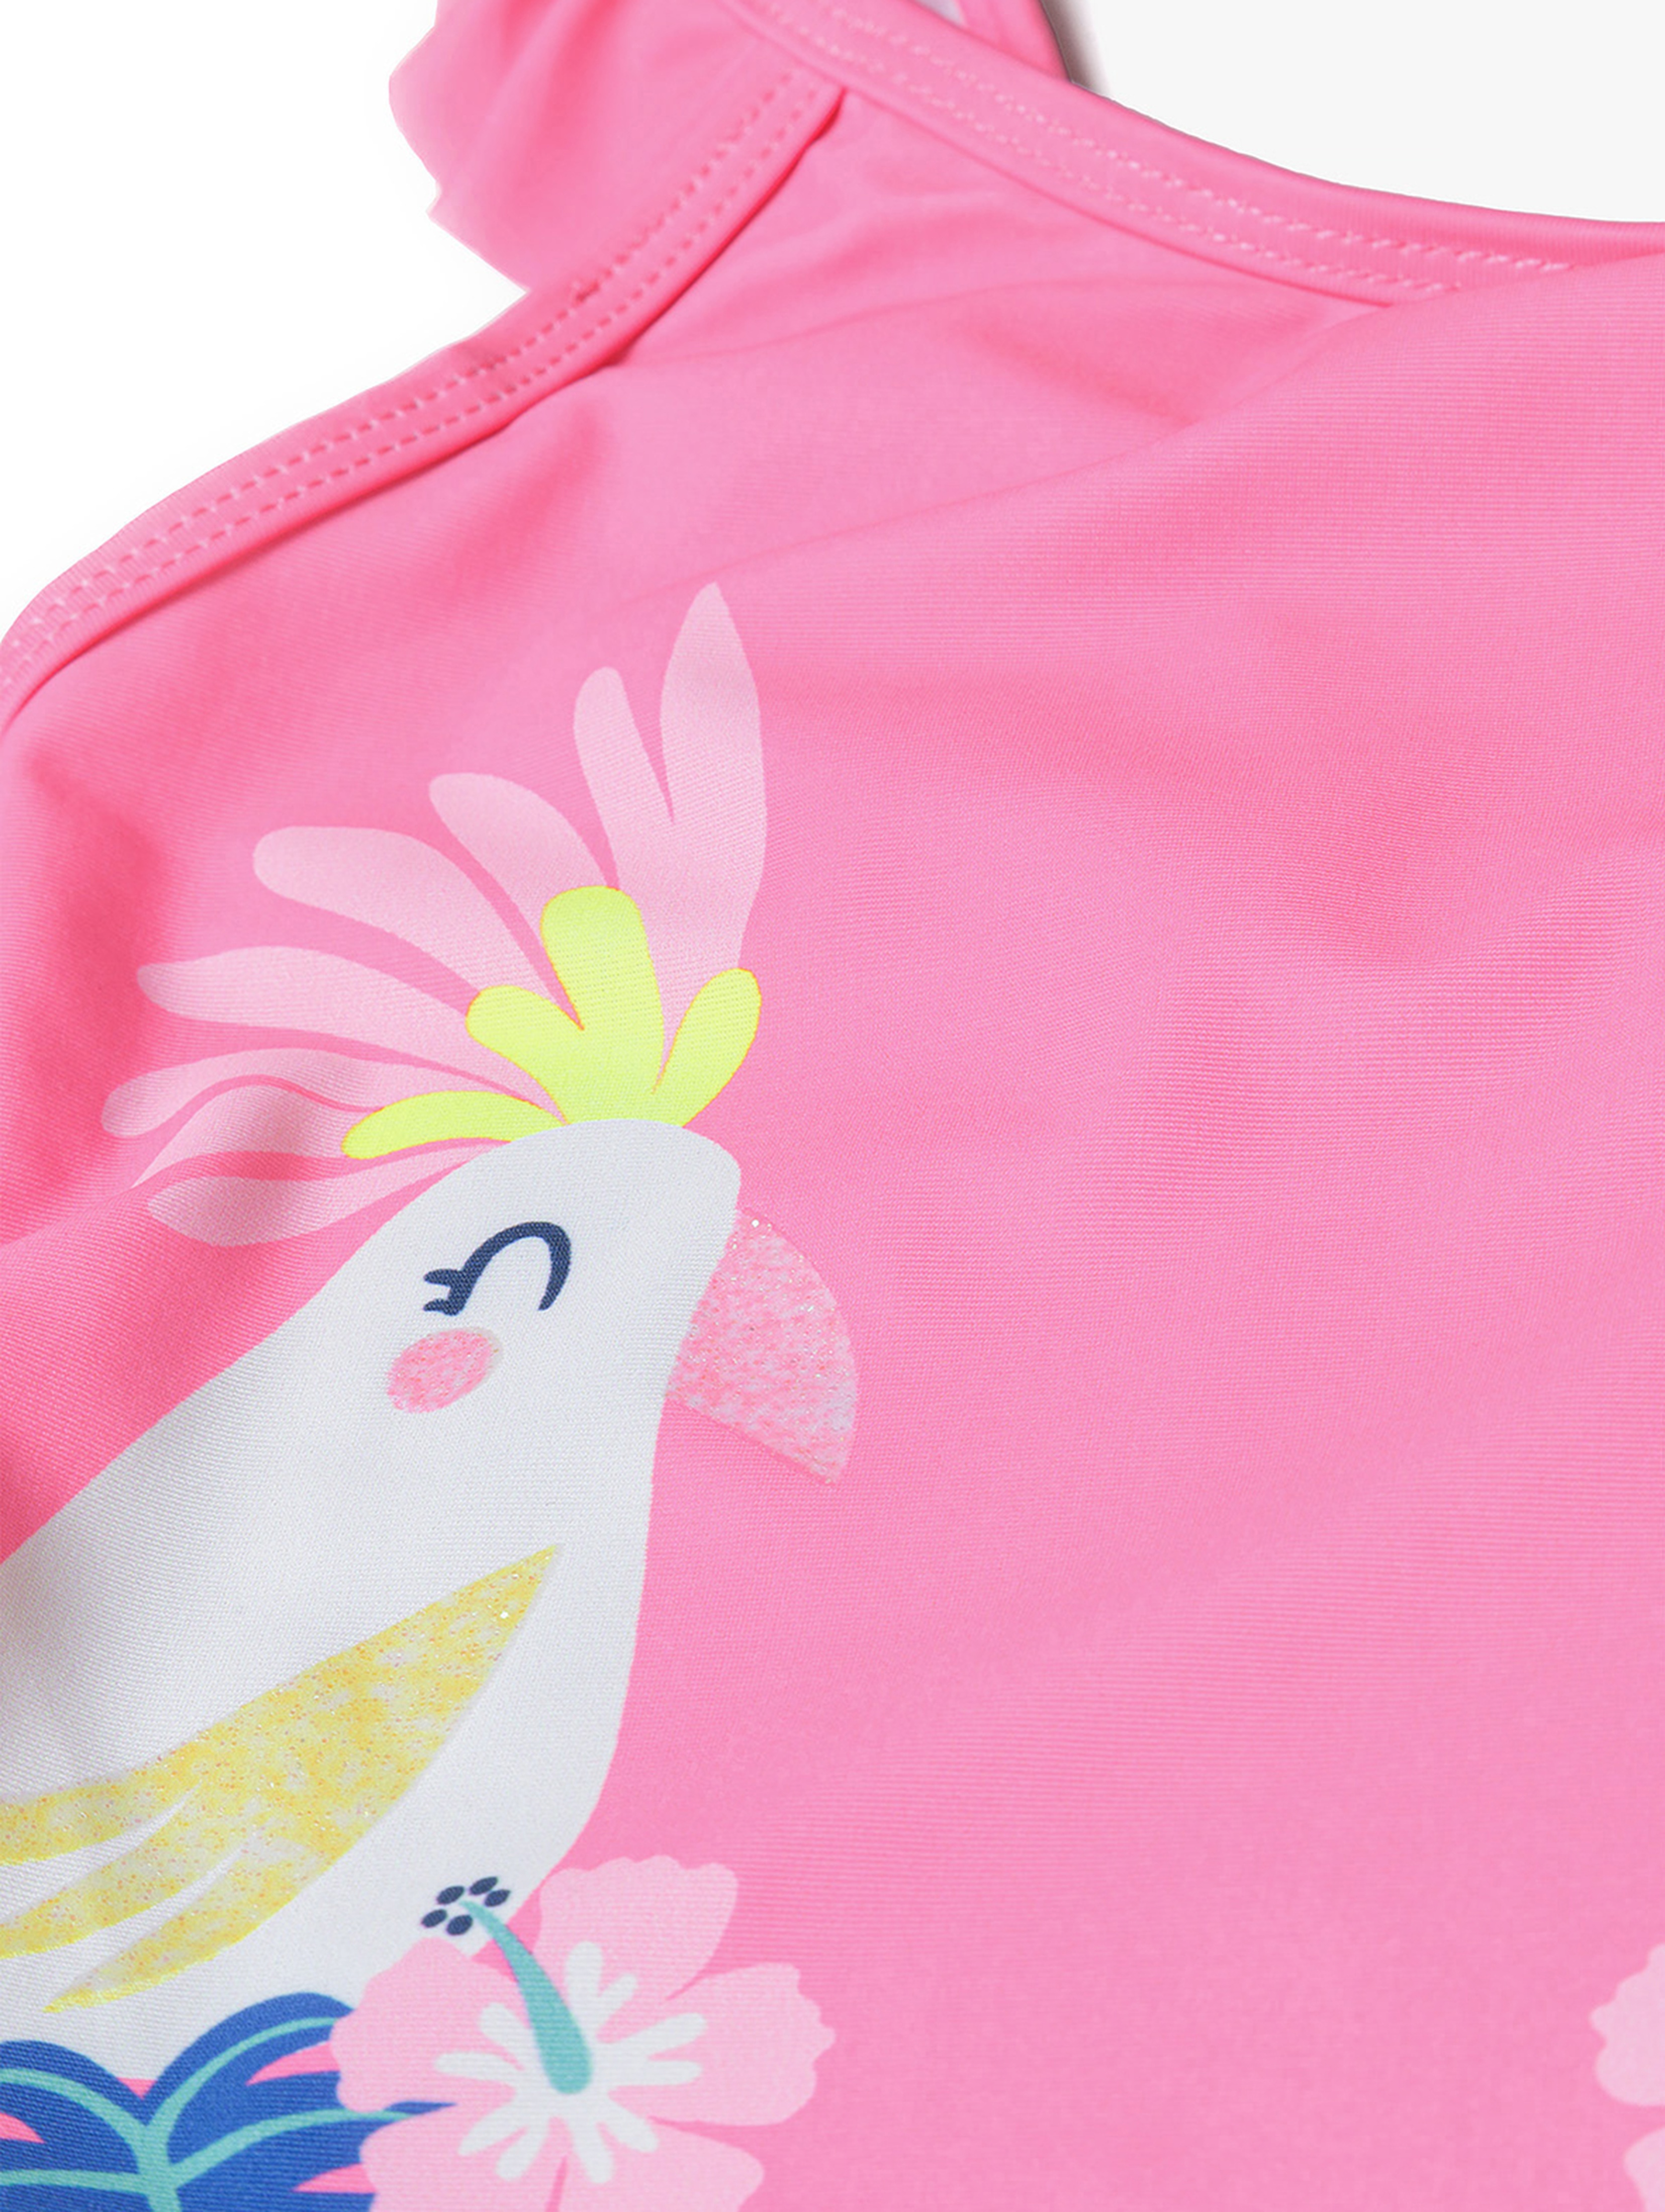 Różowy kostium kąpielowy jednoczęściowy dla dziewczynki - Minoti